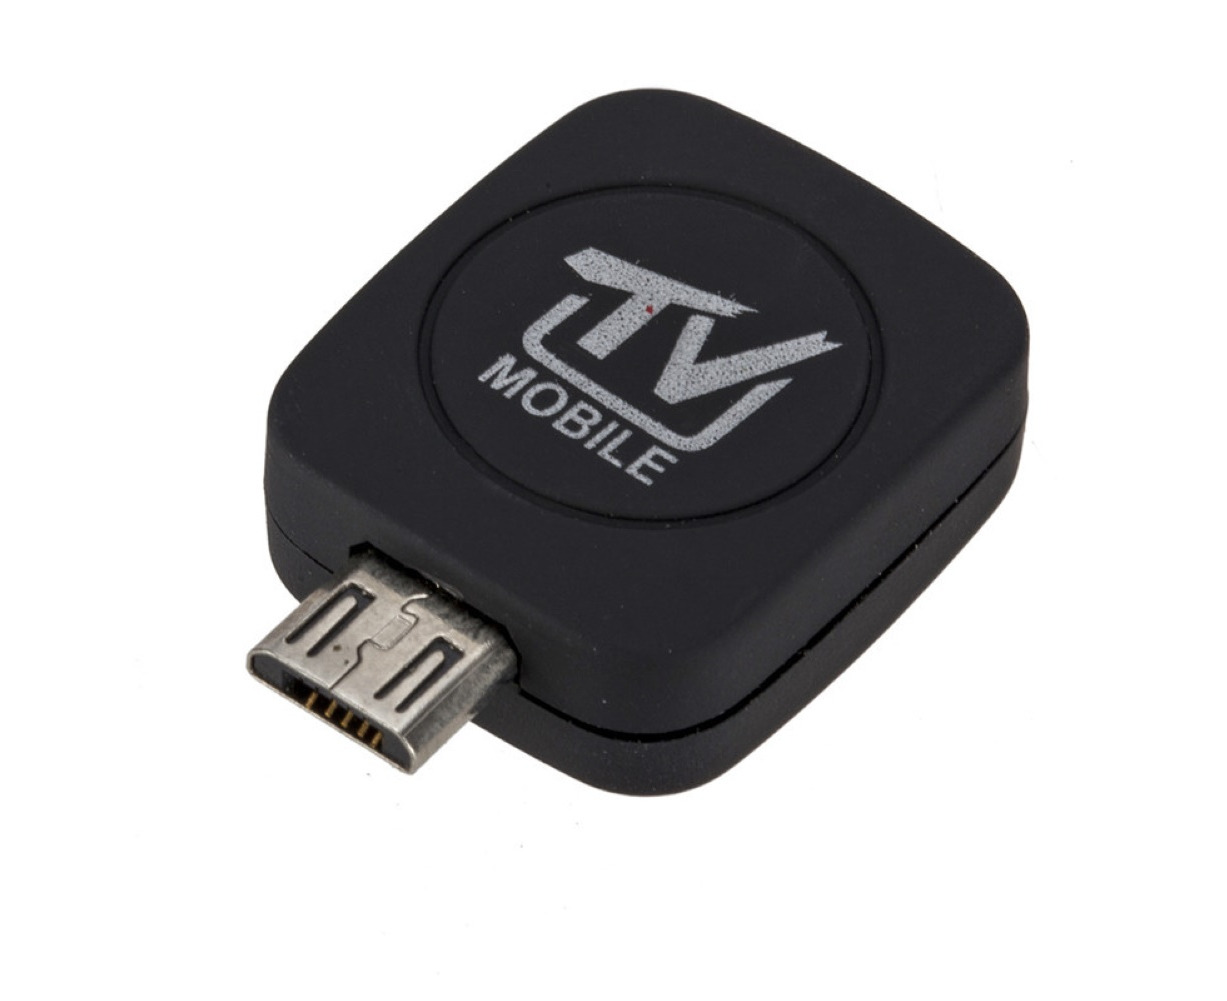 DVB-T Alimenté via Micro USB Récepteur Tuner TV pour Android Mobile Smart Phone Tablet 